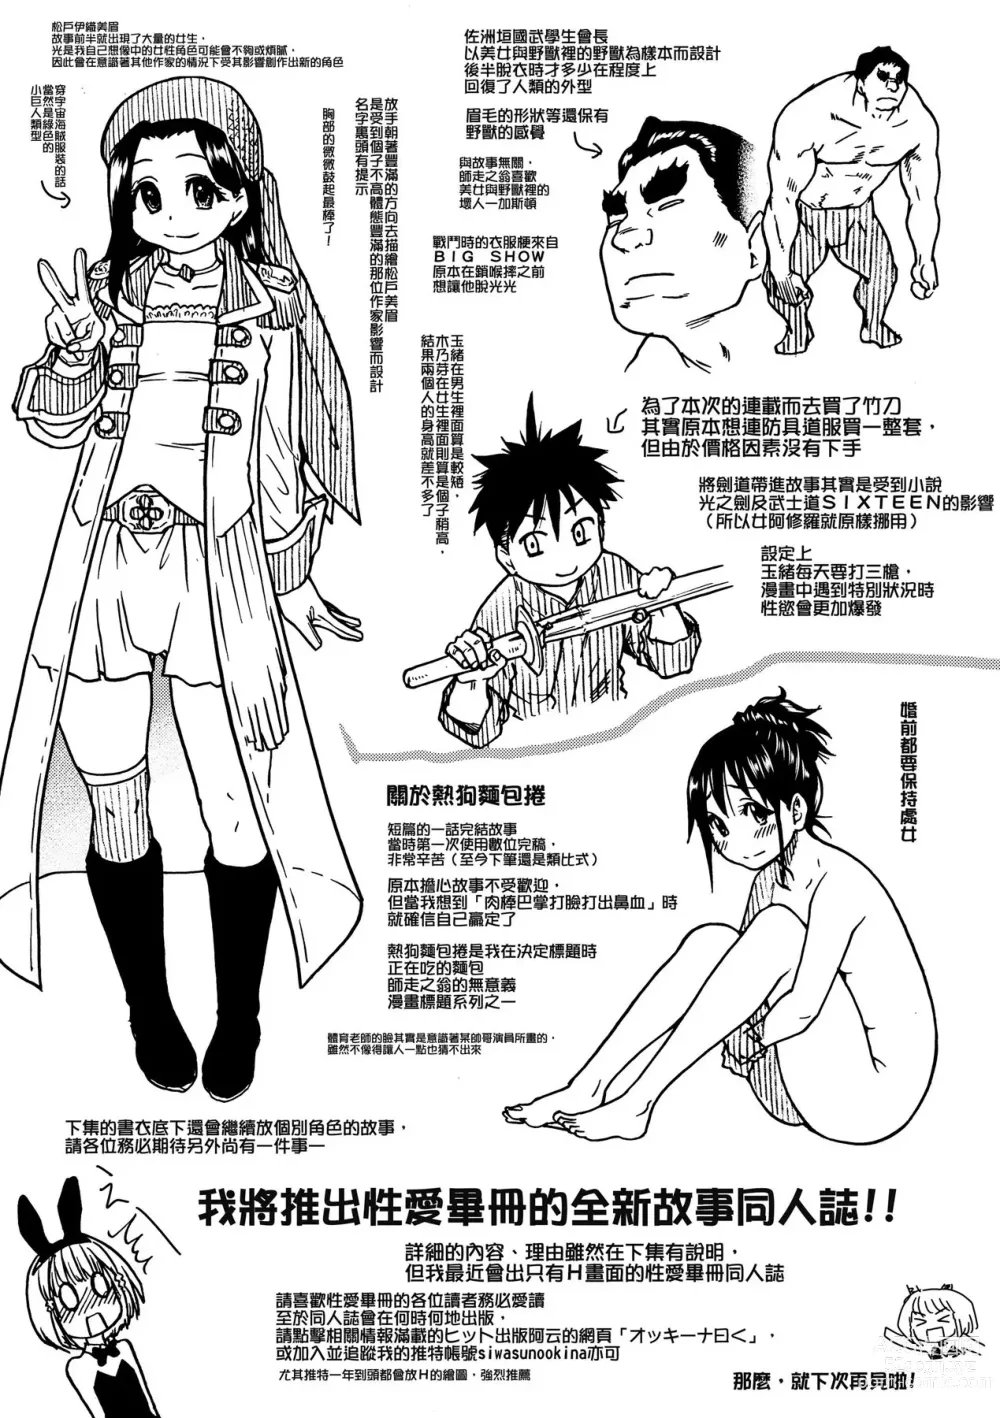 Page 263 of manga Peace Hame! Jou (decensored)